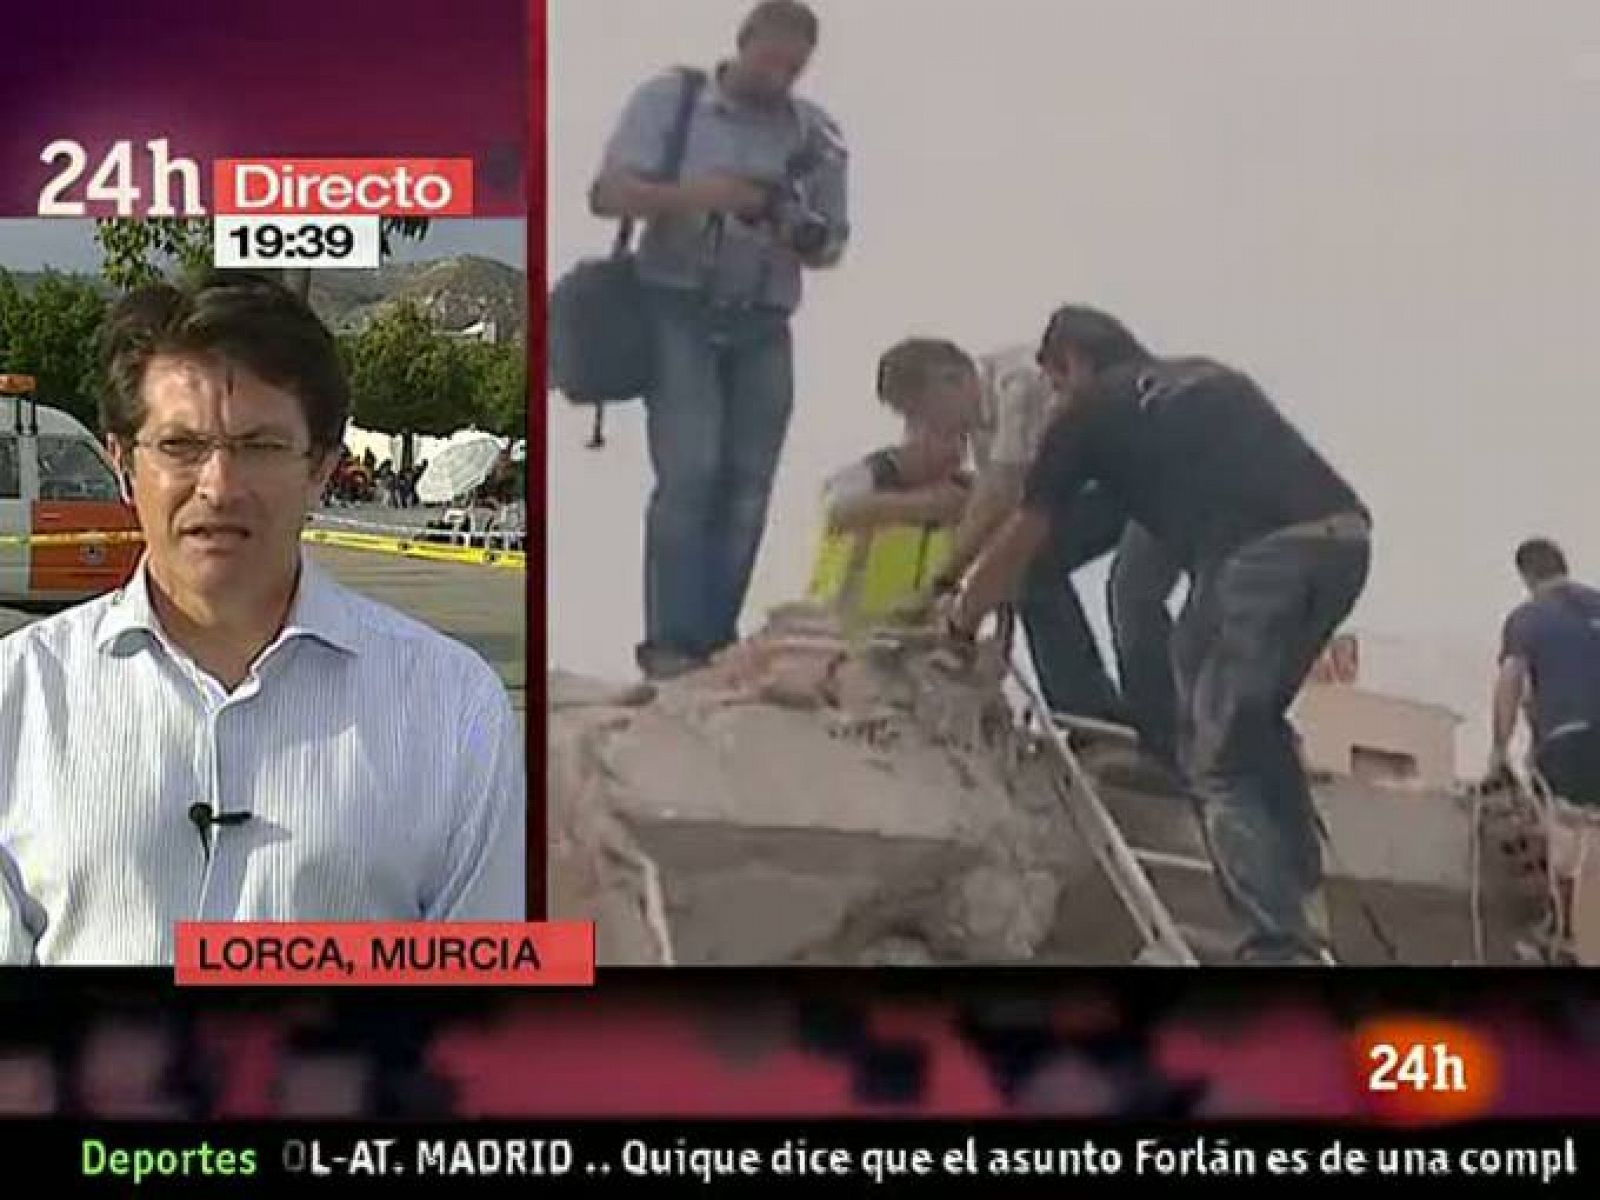 El alcalde de Lorca, Francisco Jódar, ha señalado la pérdida de vidas, de nueve personas fallecidas, como la "más lamentable". Cruz Roja y la Unidad Militar de Emergencias han habilitado campamentos para que las personas que se han quedado sin casa